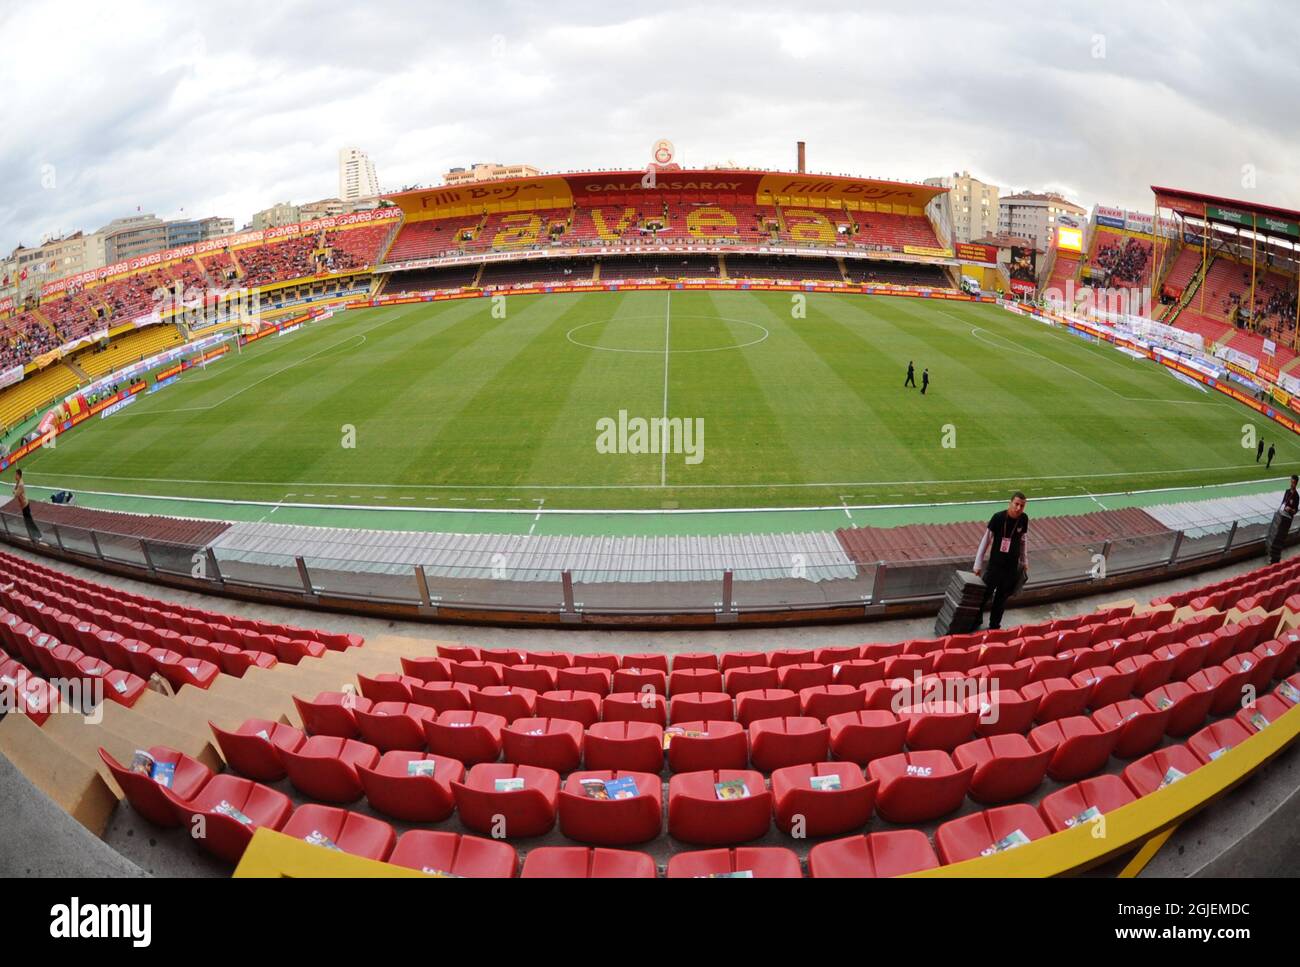 Vista general del estadio AliSamiYen antes del partido de fútbol de la Super Liga Turca entre Galatasaray y Eskisehirspor Foto de stock